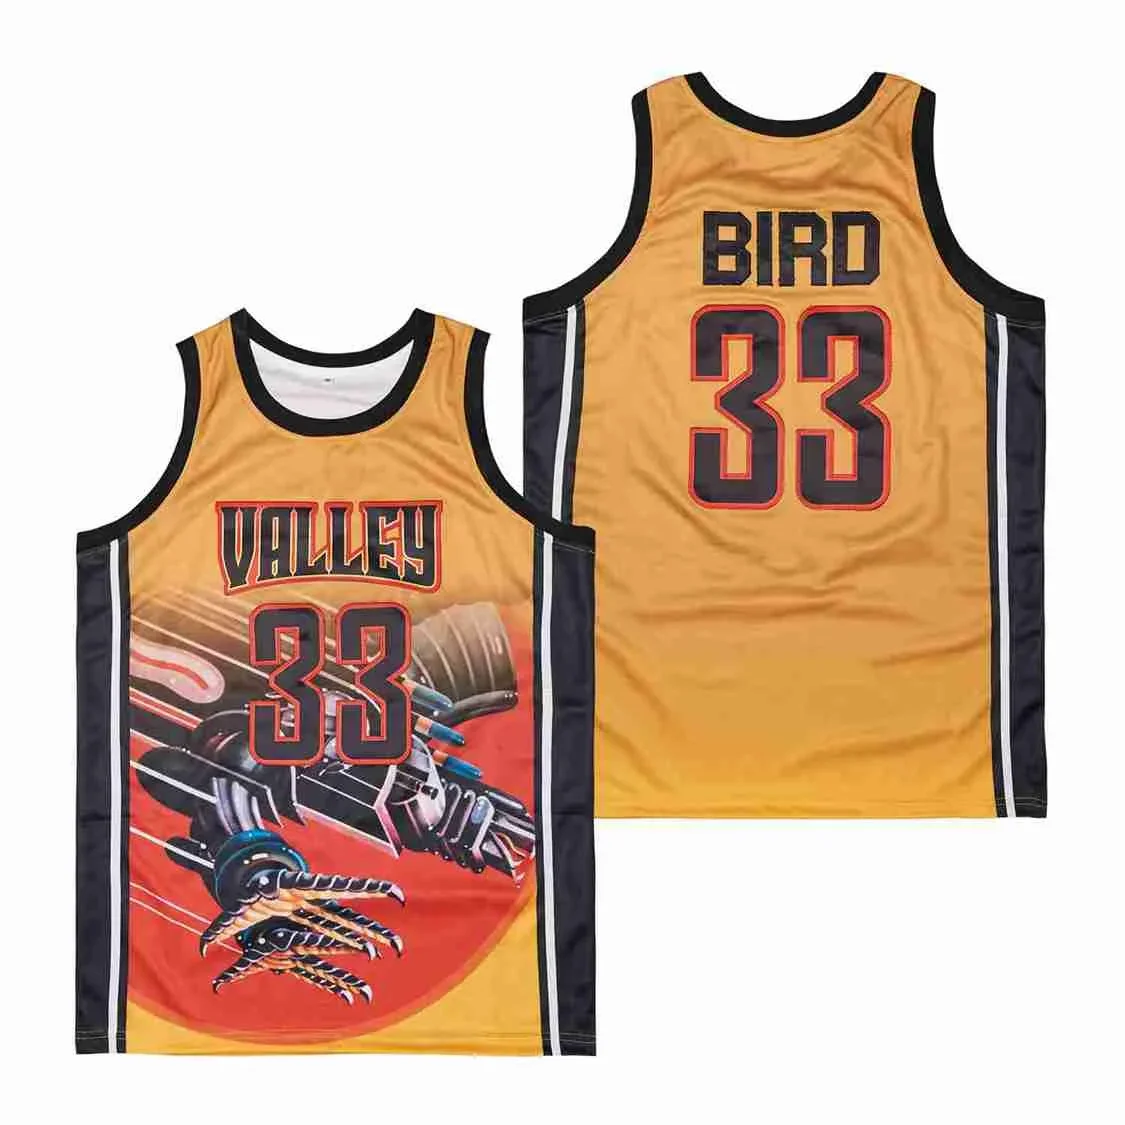 

Баскетбольные Джерси VALLEY 33, Джерси с вышивкой птицы, высококачественные спортивные дышащие Желтые Джерси в стиле хип-хоп для улицы, новинка 2023